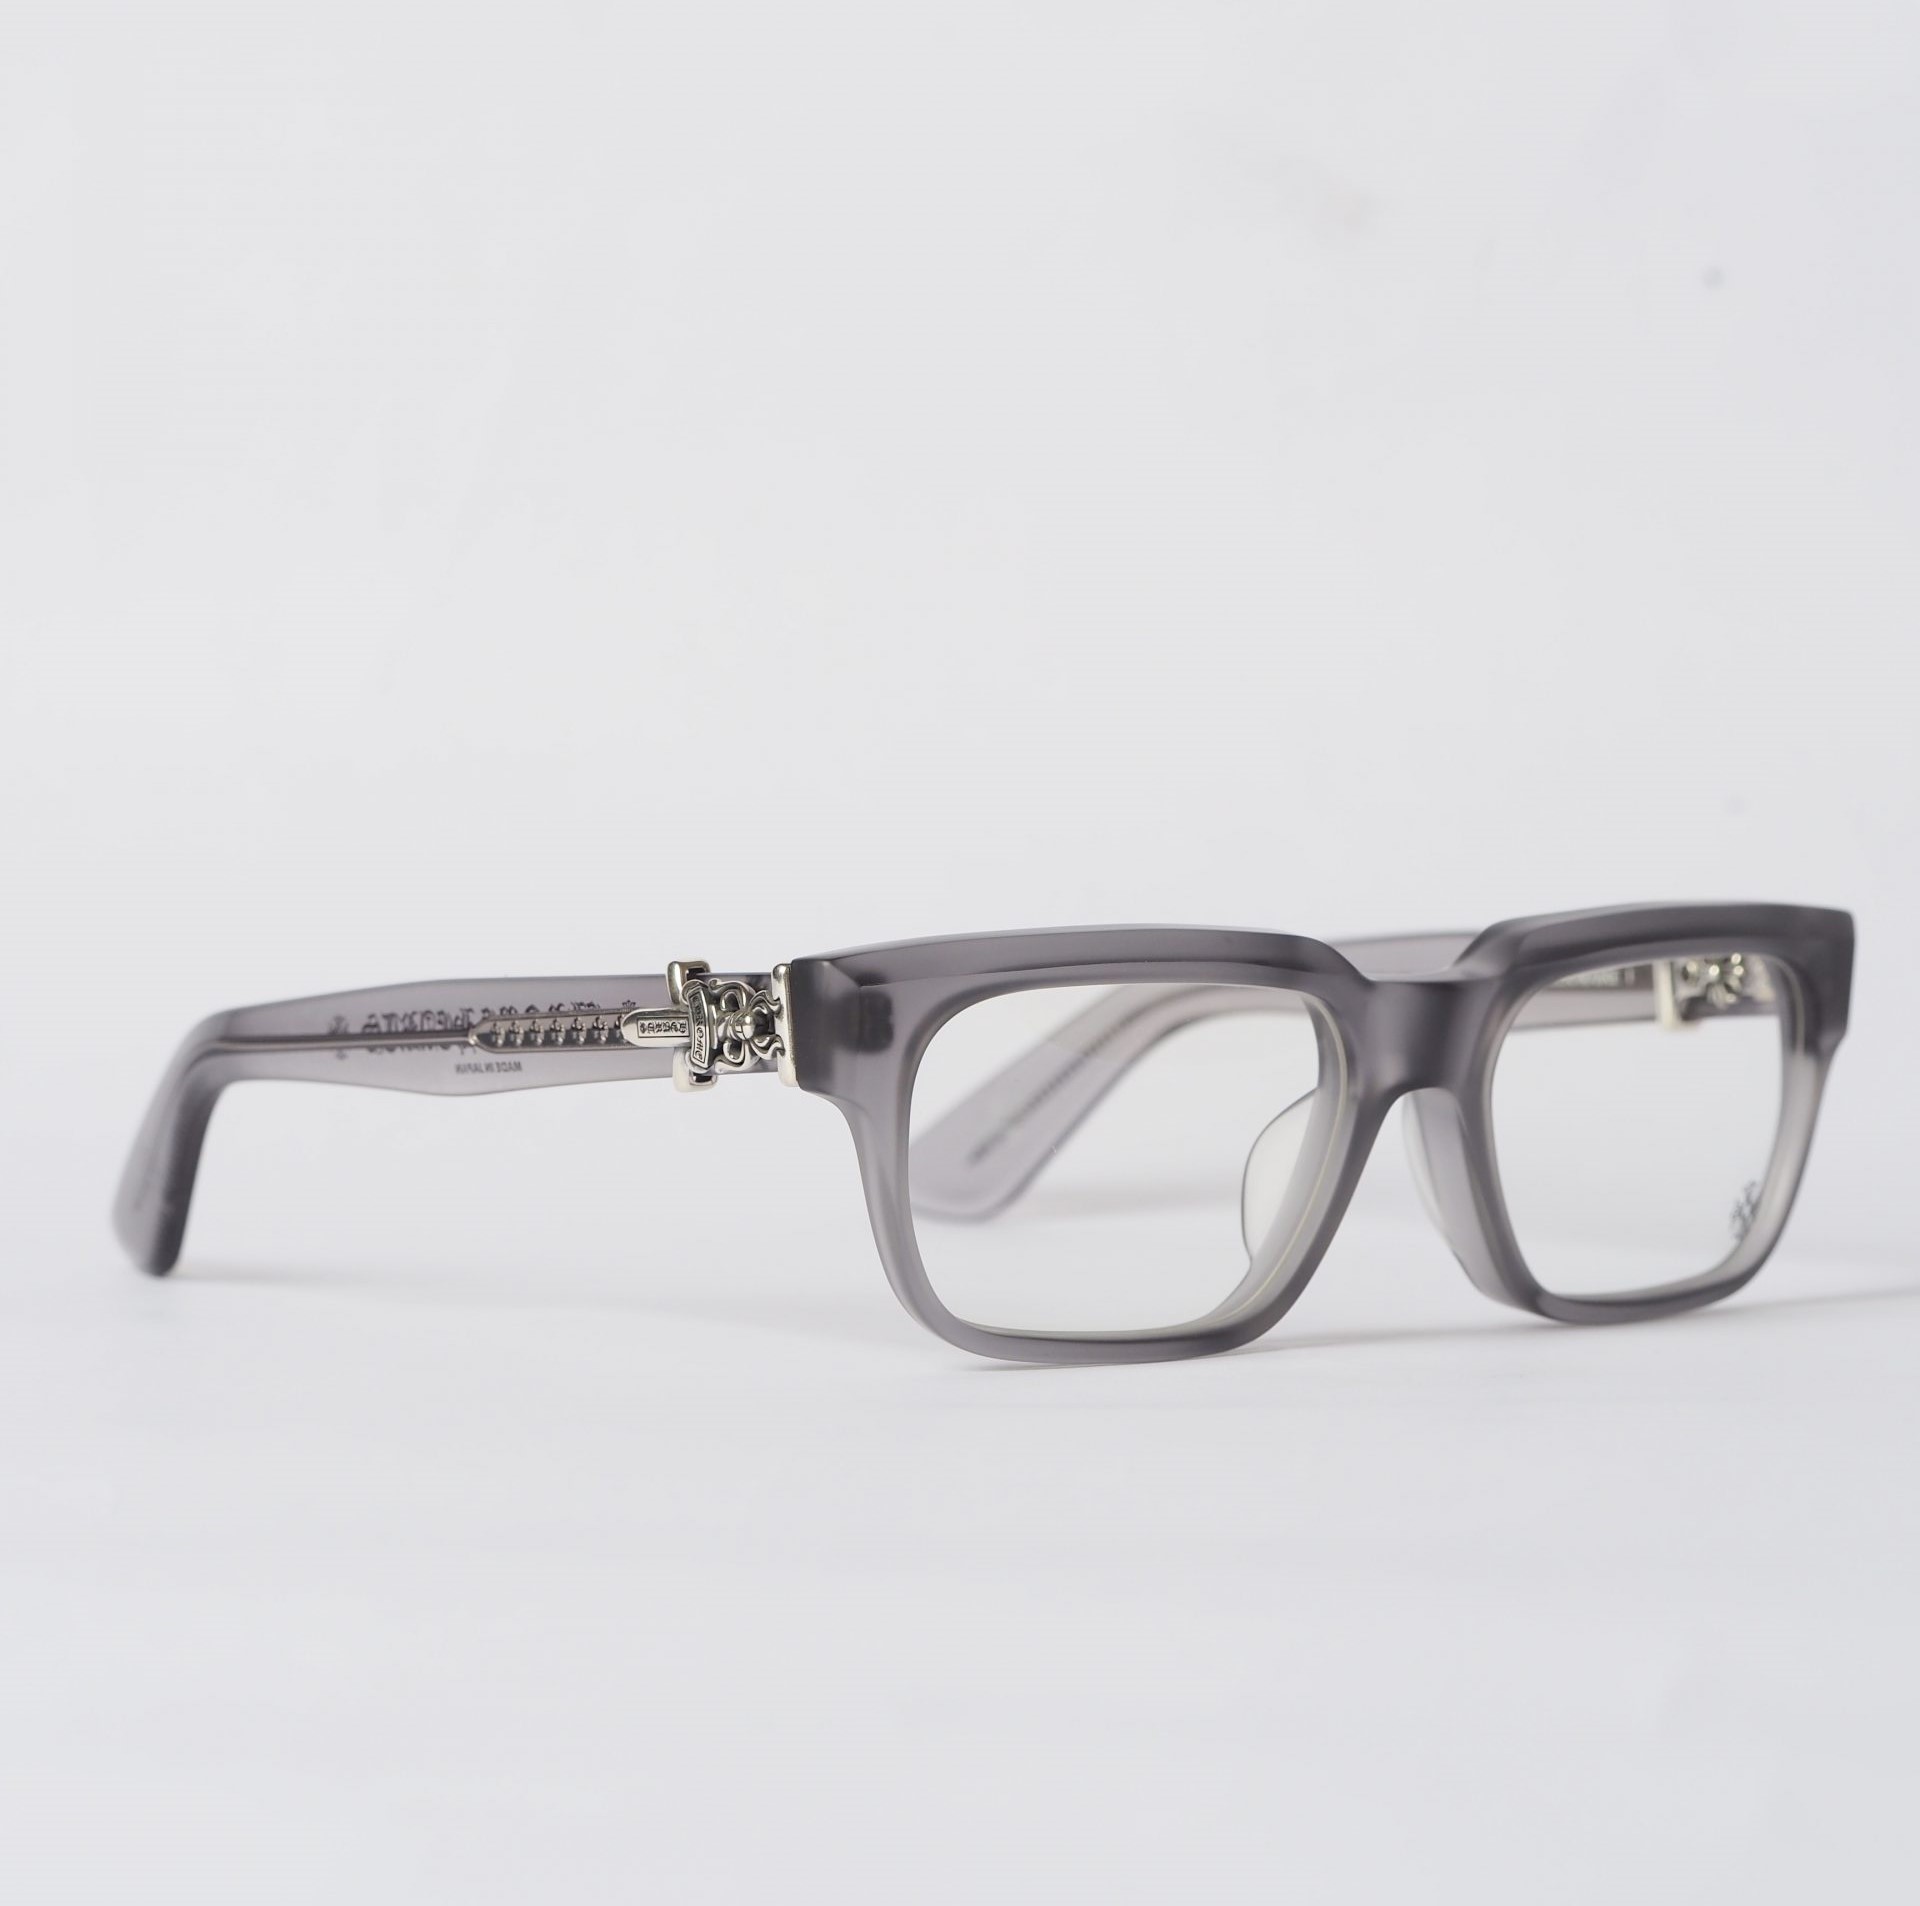 Chrome Hearts Glasses Sunglasses VAGILLIONAIRE I – MATTE GRAPHITESILVER 2